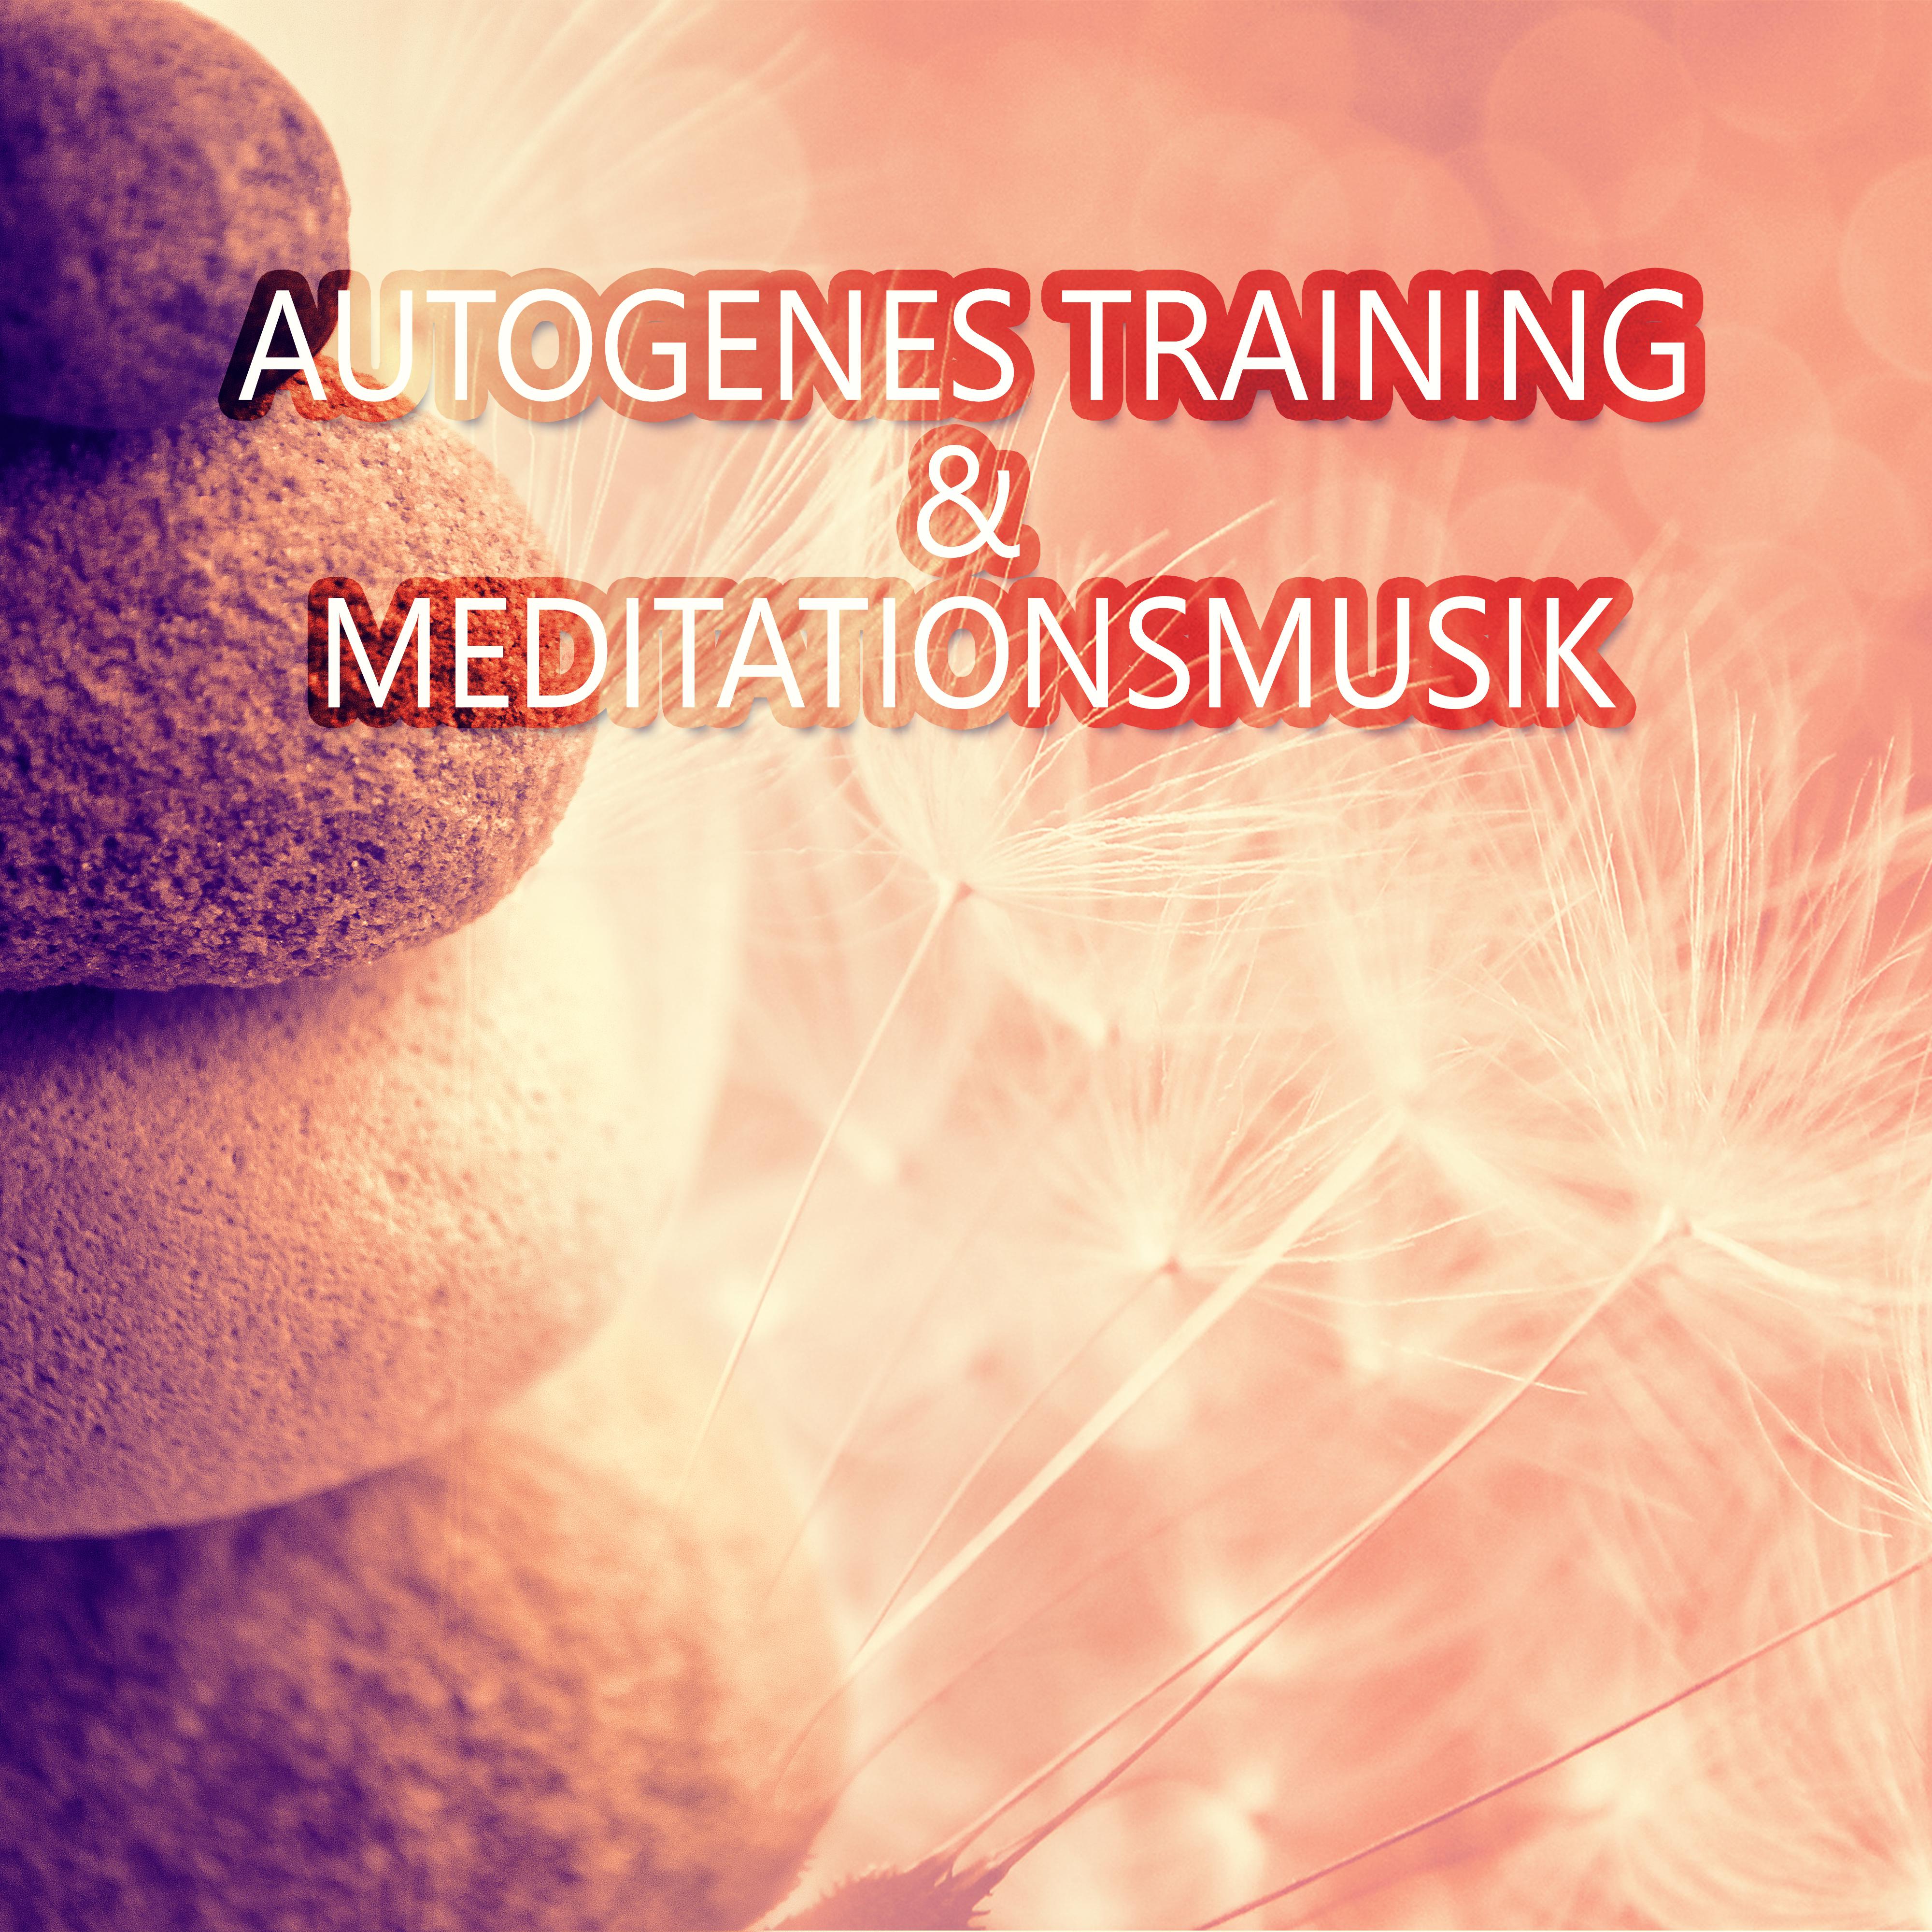 Autogenes Training & Meditationsmusik: Entspannungmusik und Gesunder Schlaf, Tiefentspannungsmusik, Regeneration, Erholung & Wellness